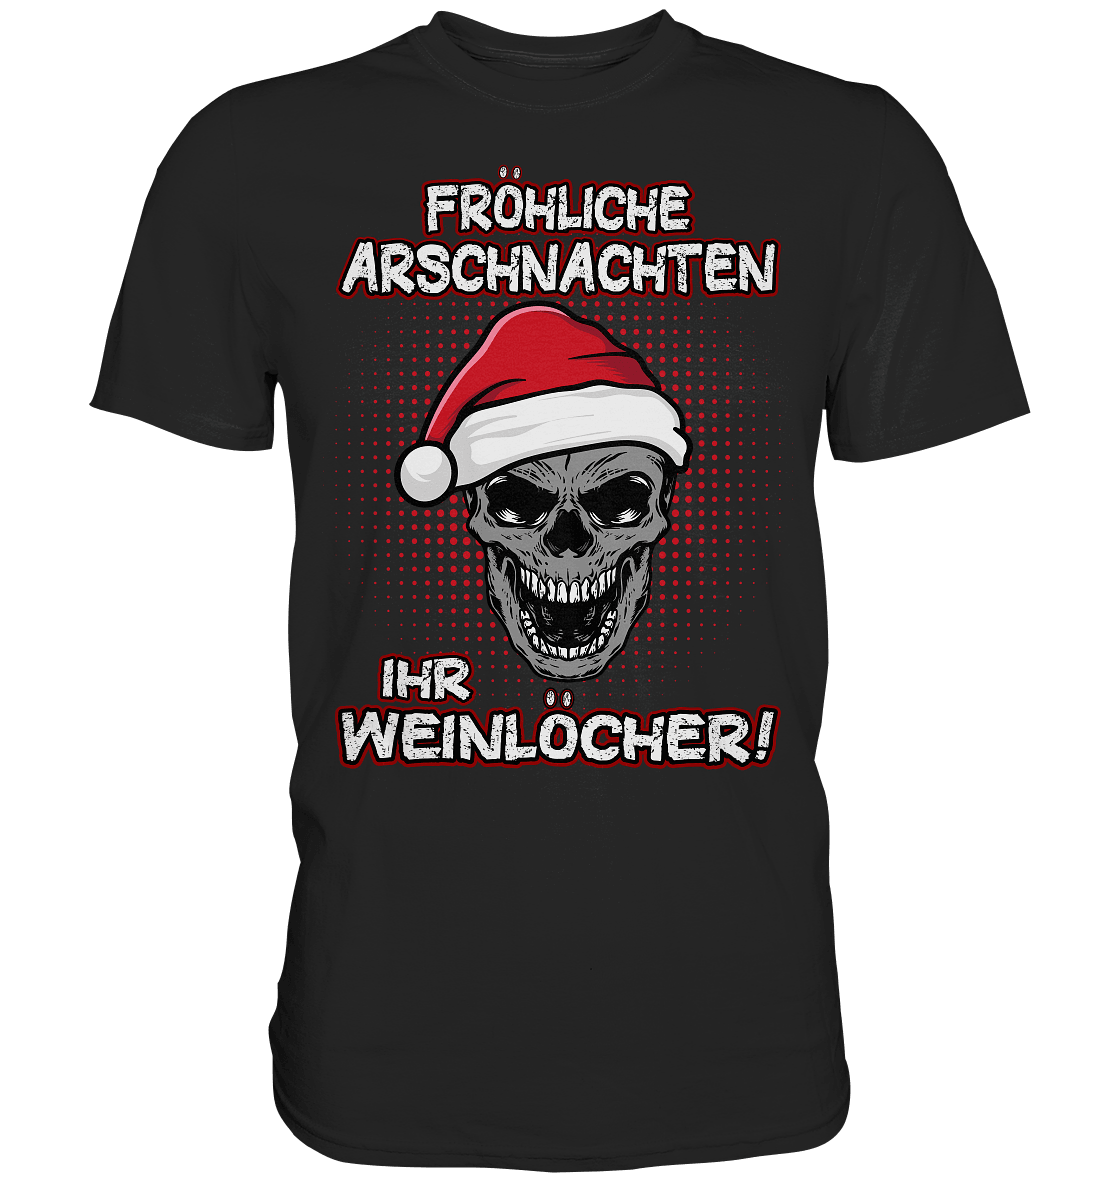 Fröhliche Arschnachten ihr Weinlöcher! - Shirt - Totally Wasted